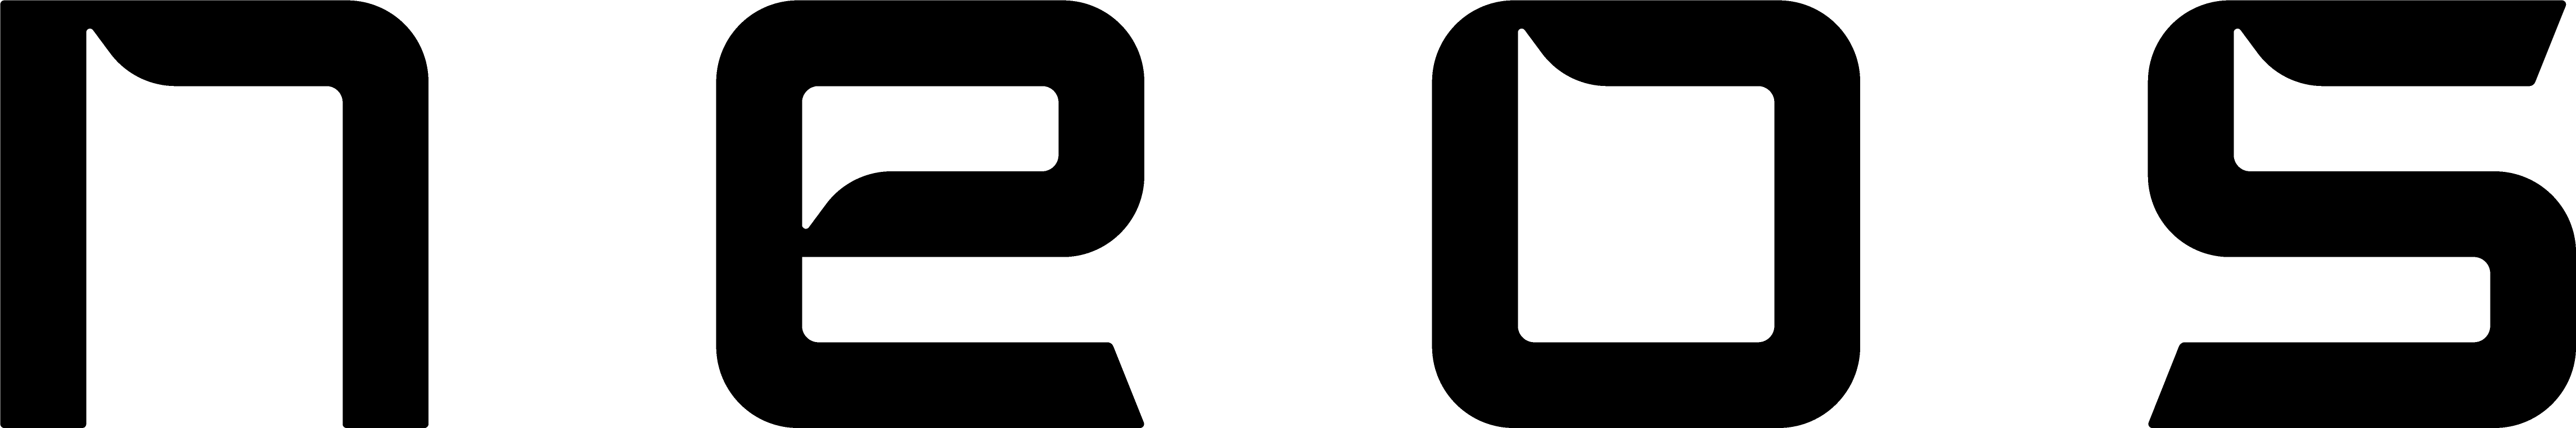 Neos - logo